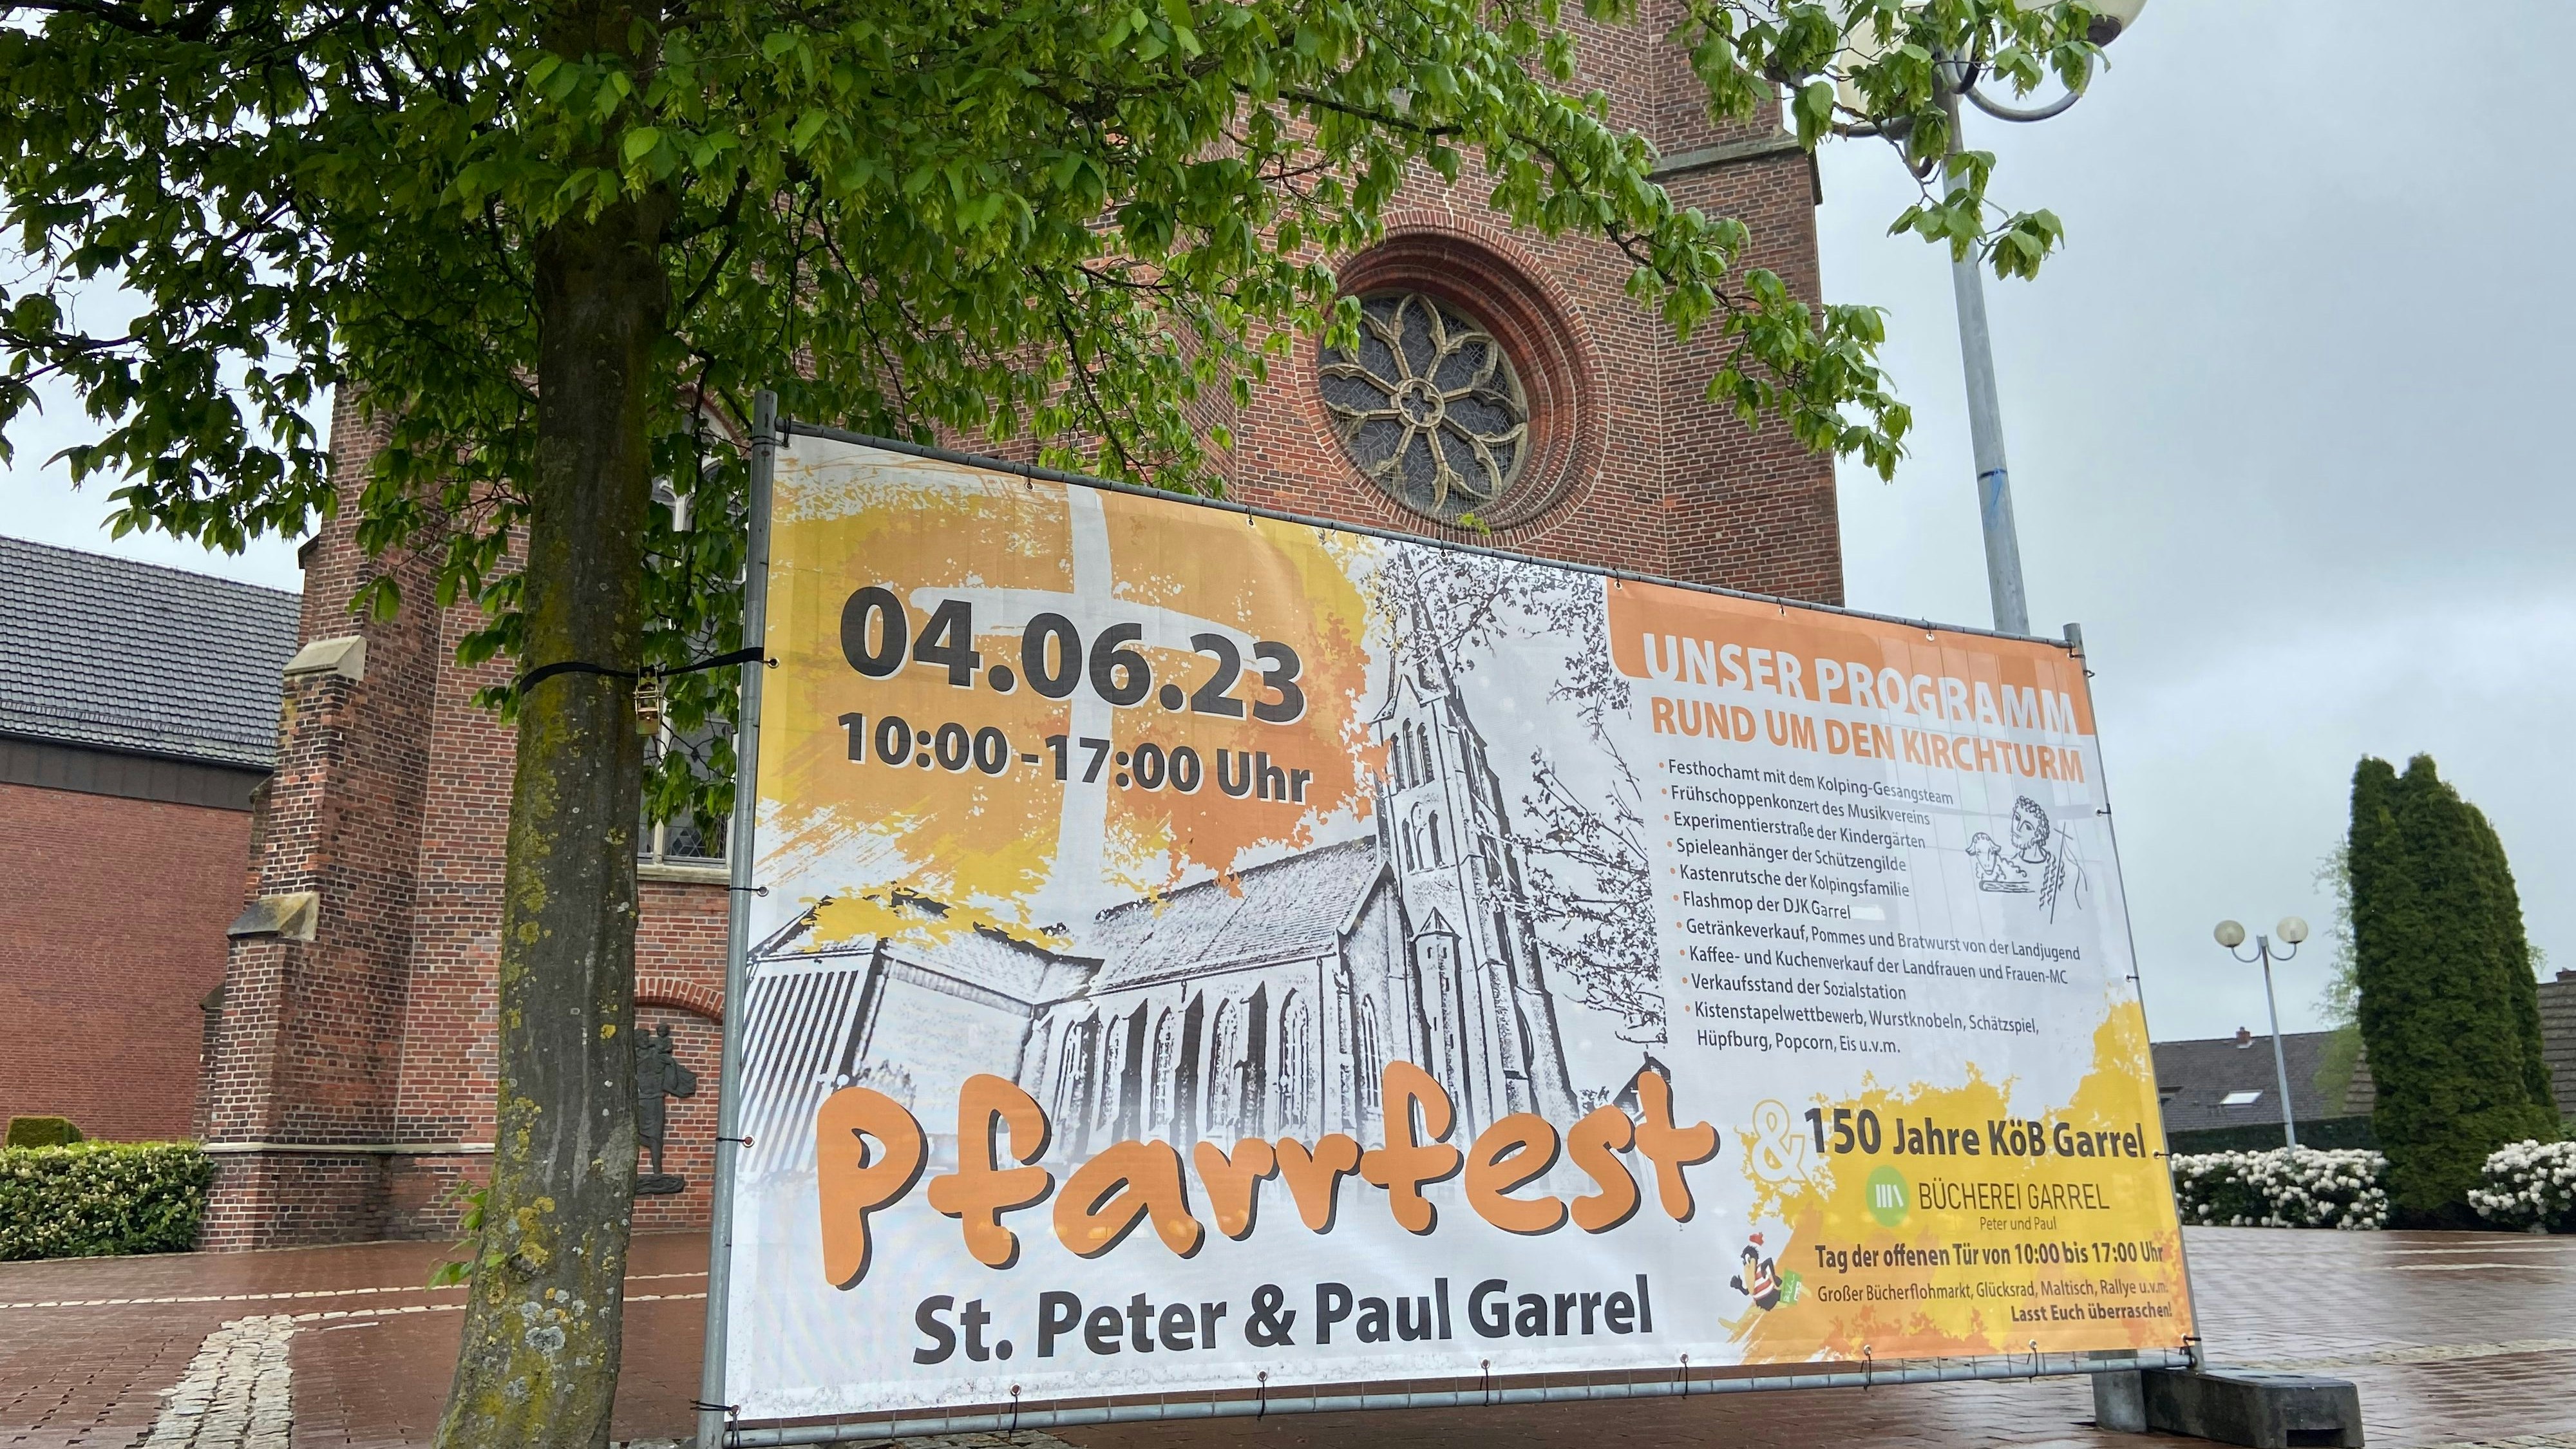 Pfarrfest: Der Kirchturmvorplatz verwandelt sich am 4. Juni zu einem Veranstaltungsort mit vielen Angeboten für Jung und Alt. Foto: Hoff